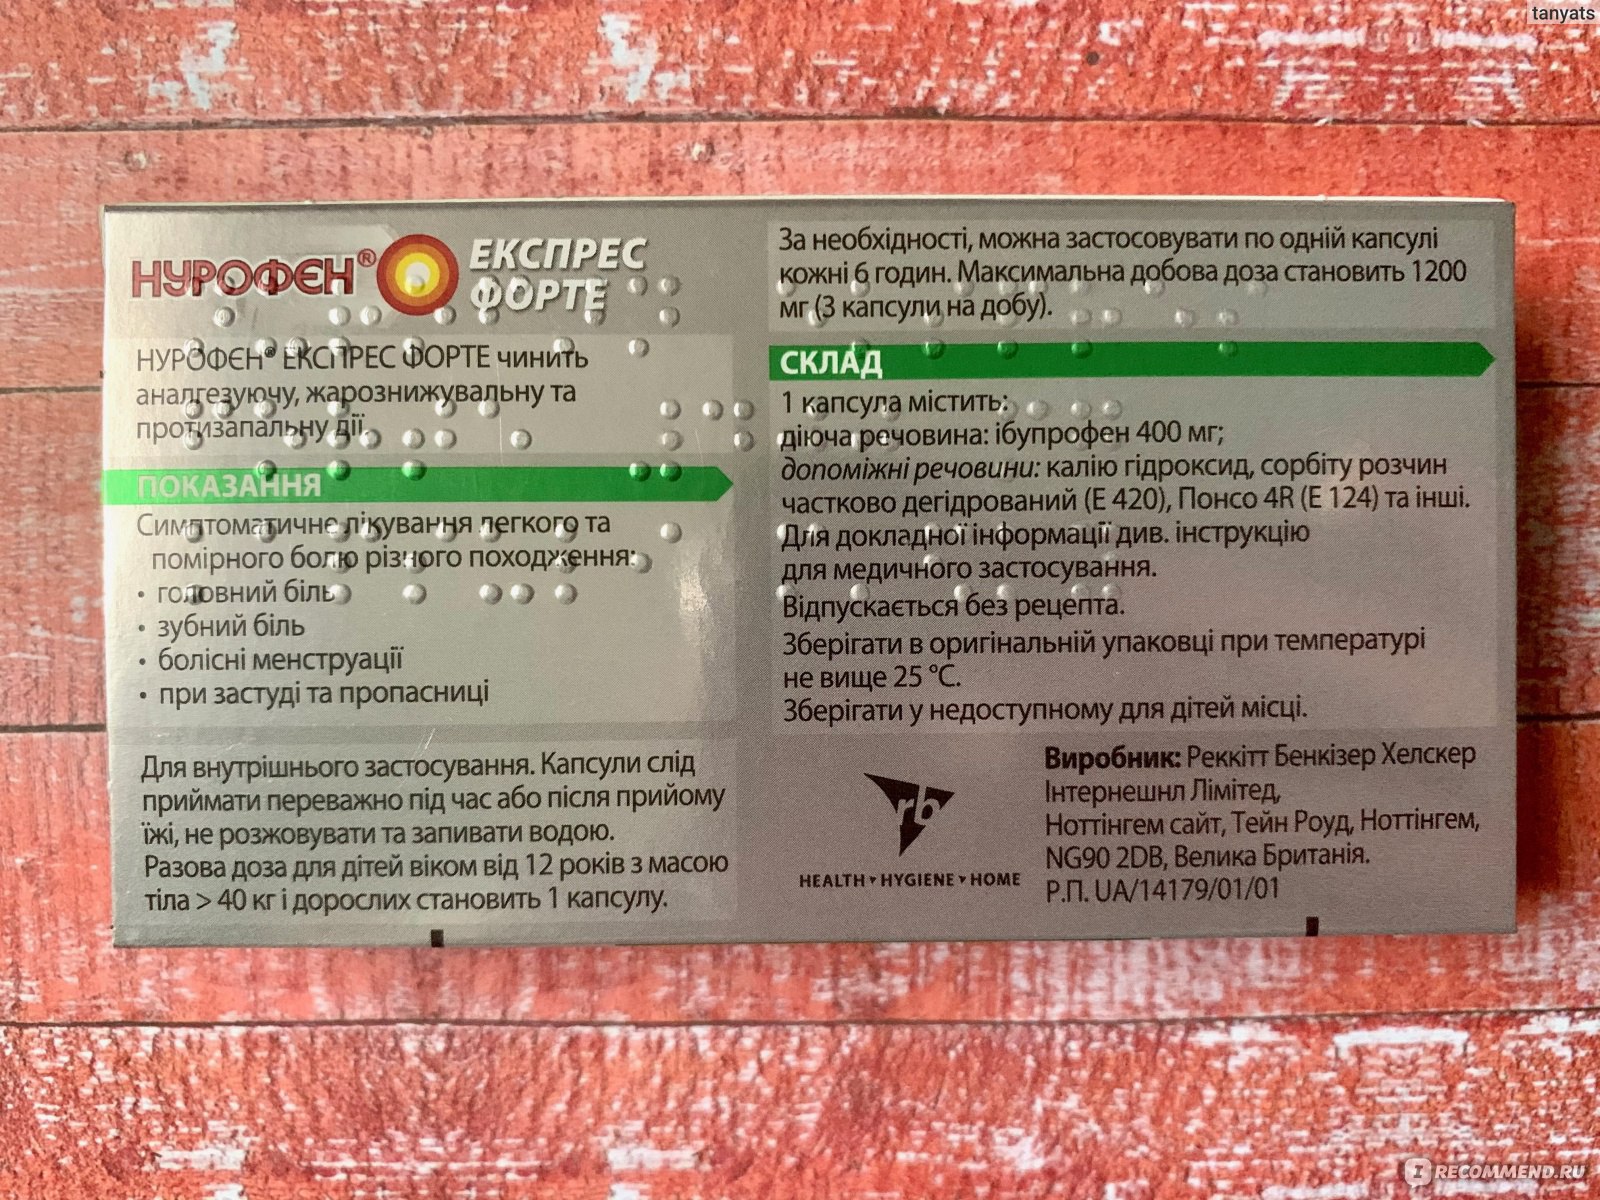 Нурофен Экспресс Форте - информация с упаковки 